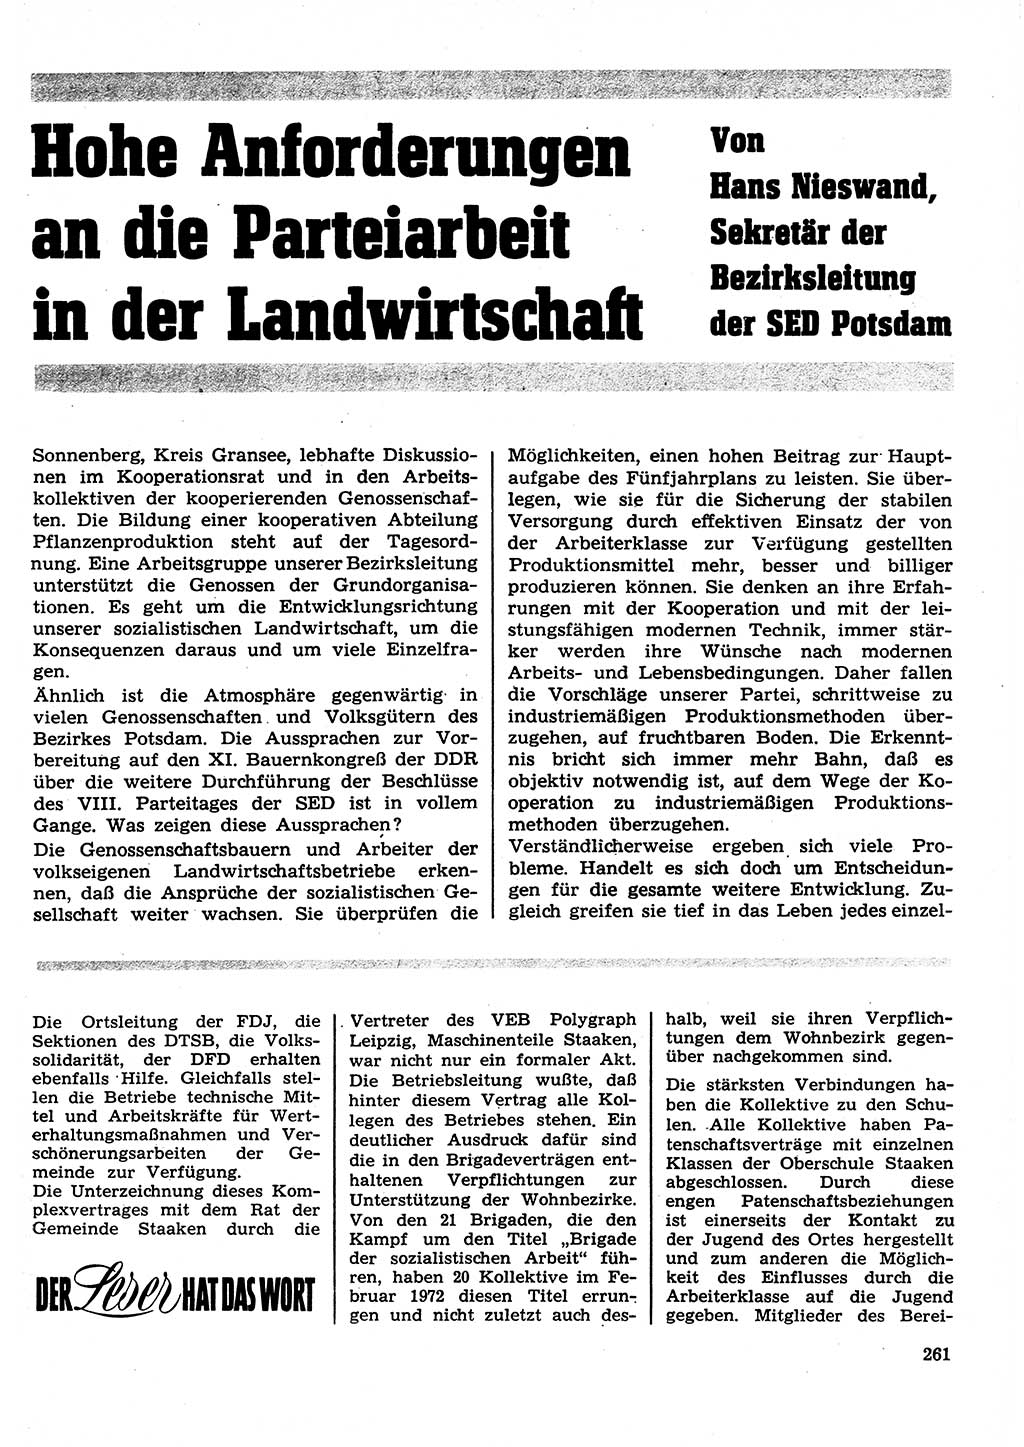 Neuer Weg (NW), Organ des Zentralkomitees (ZK) der SED (Sozialistische Einheitspartei Deutschlands) für Fragen des Parteilebens, 27. Jahrgang [Deutsche Demokratische Republik (DDR)] 1972, Seite 261 (NW ZK SED DDR 1972, S. 261)